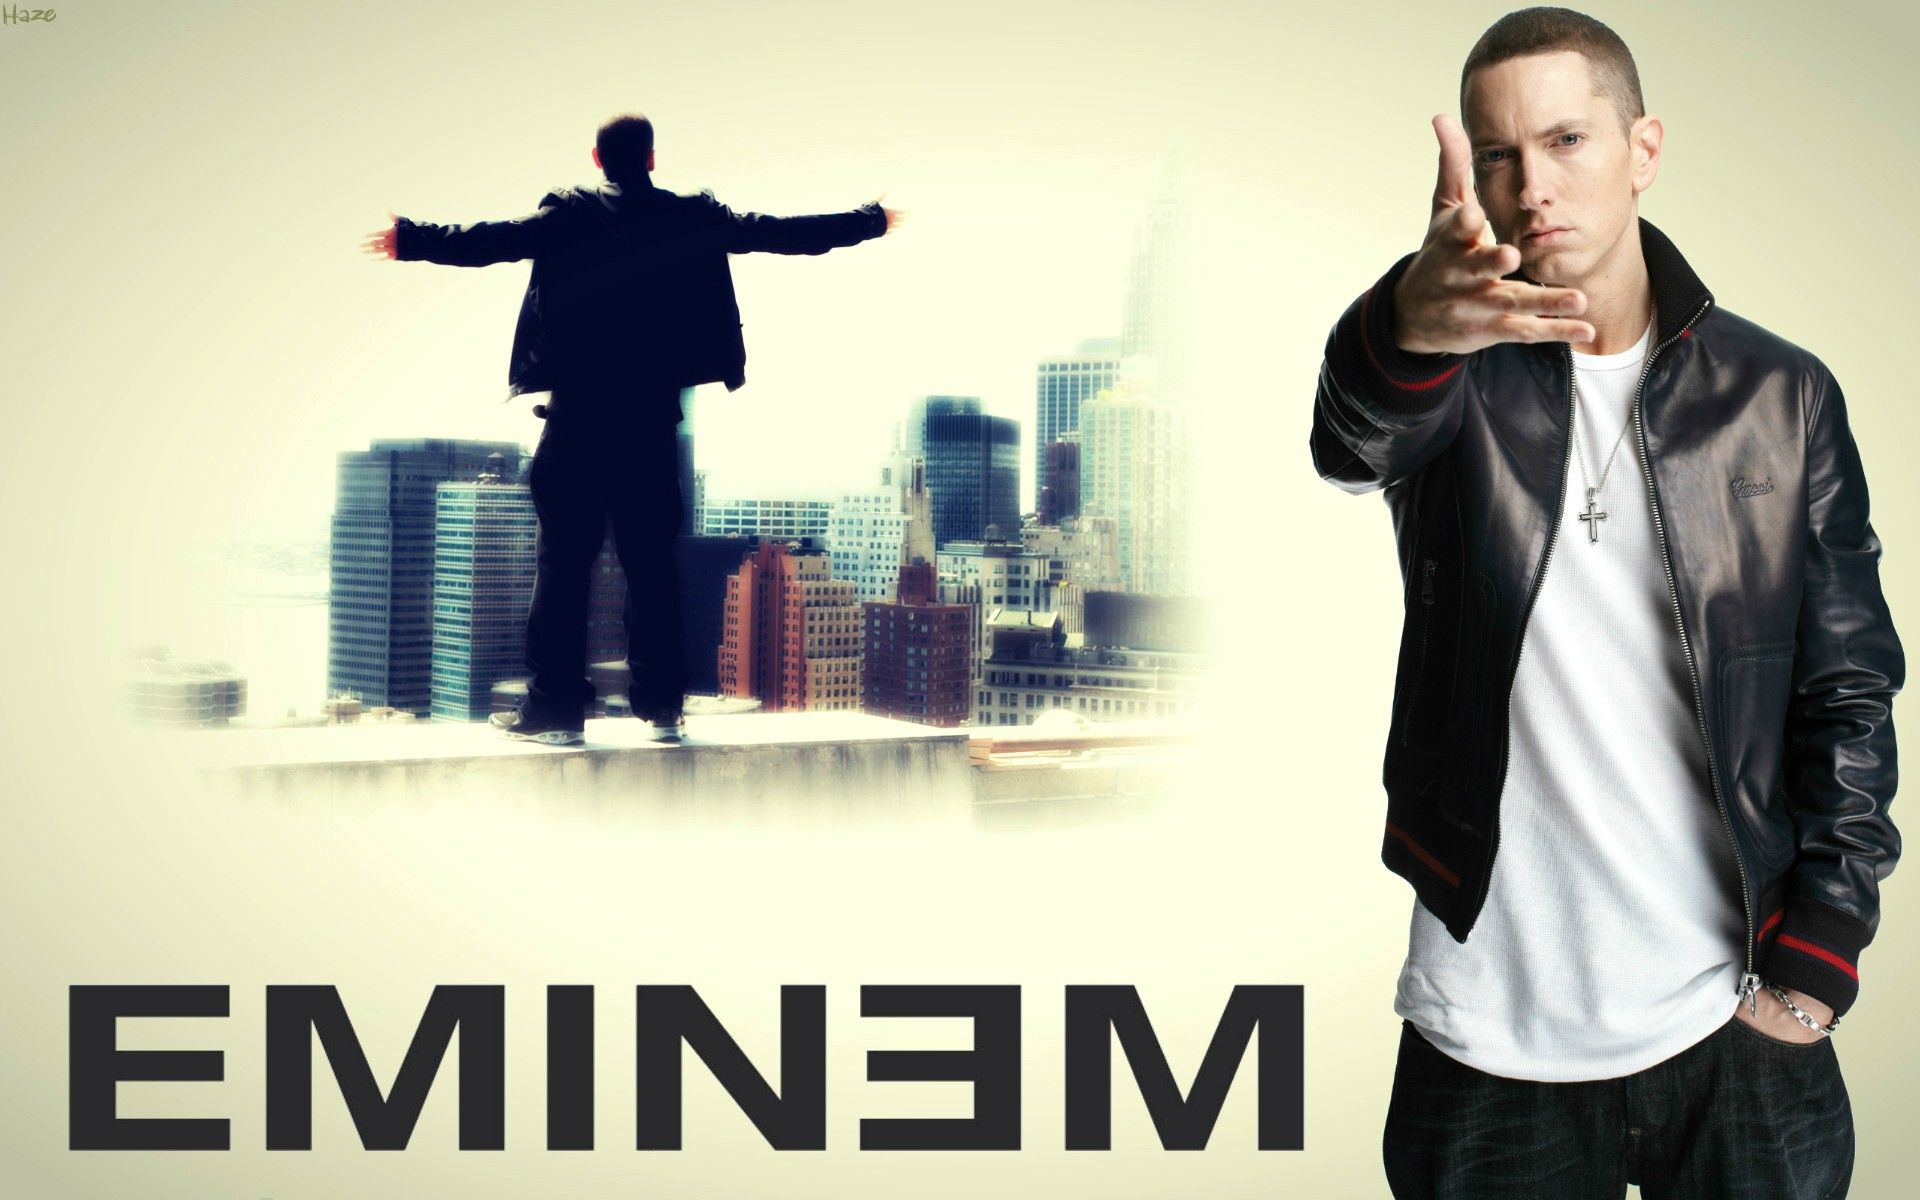 Lv Eminem Wallpaper Pictures In Best